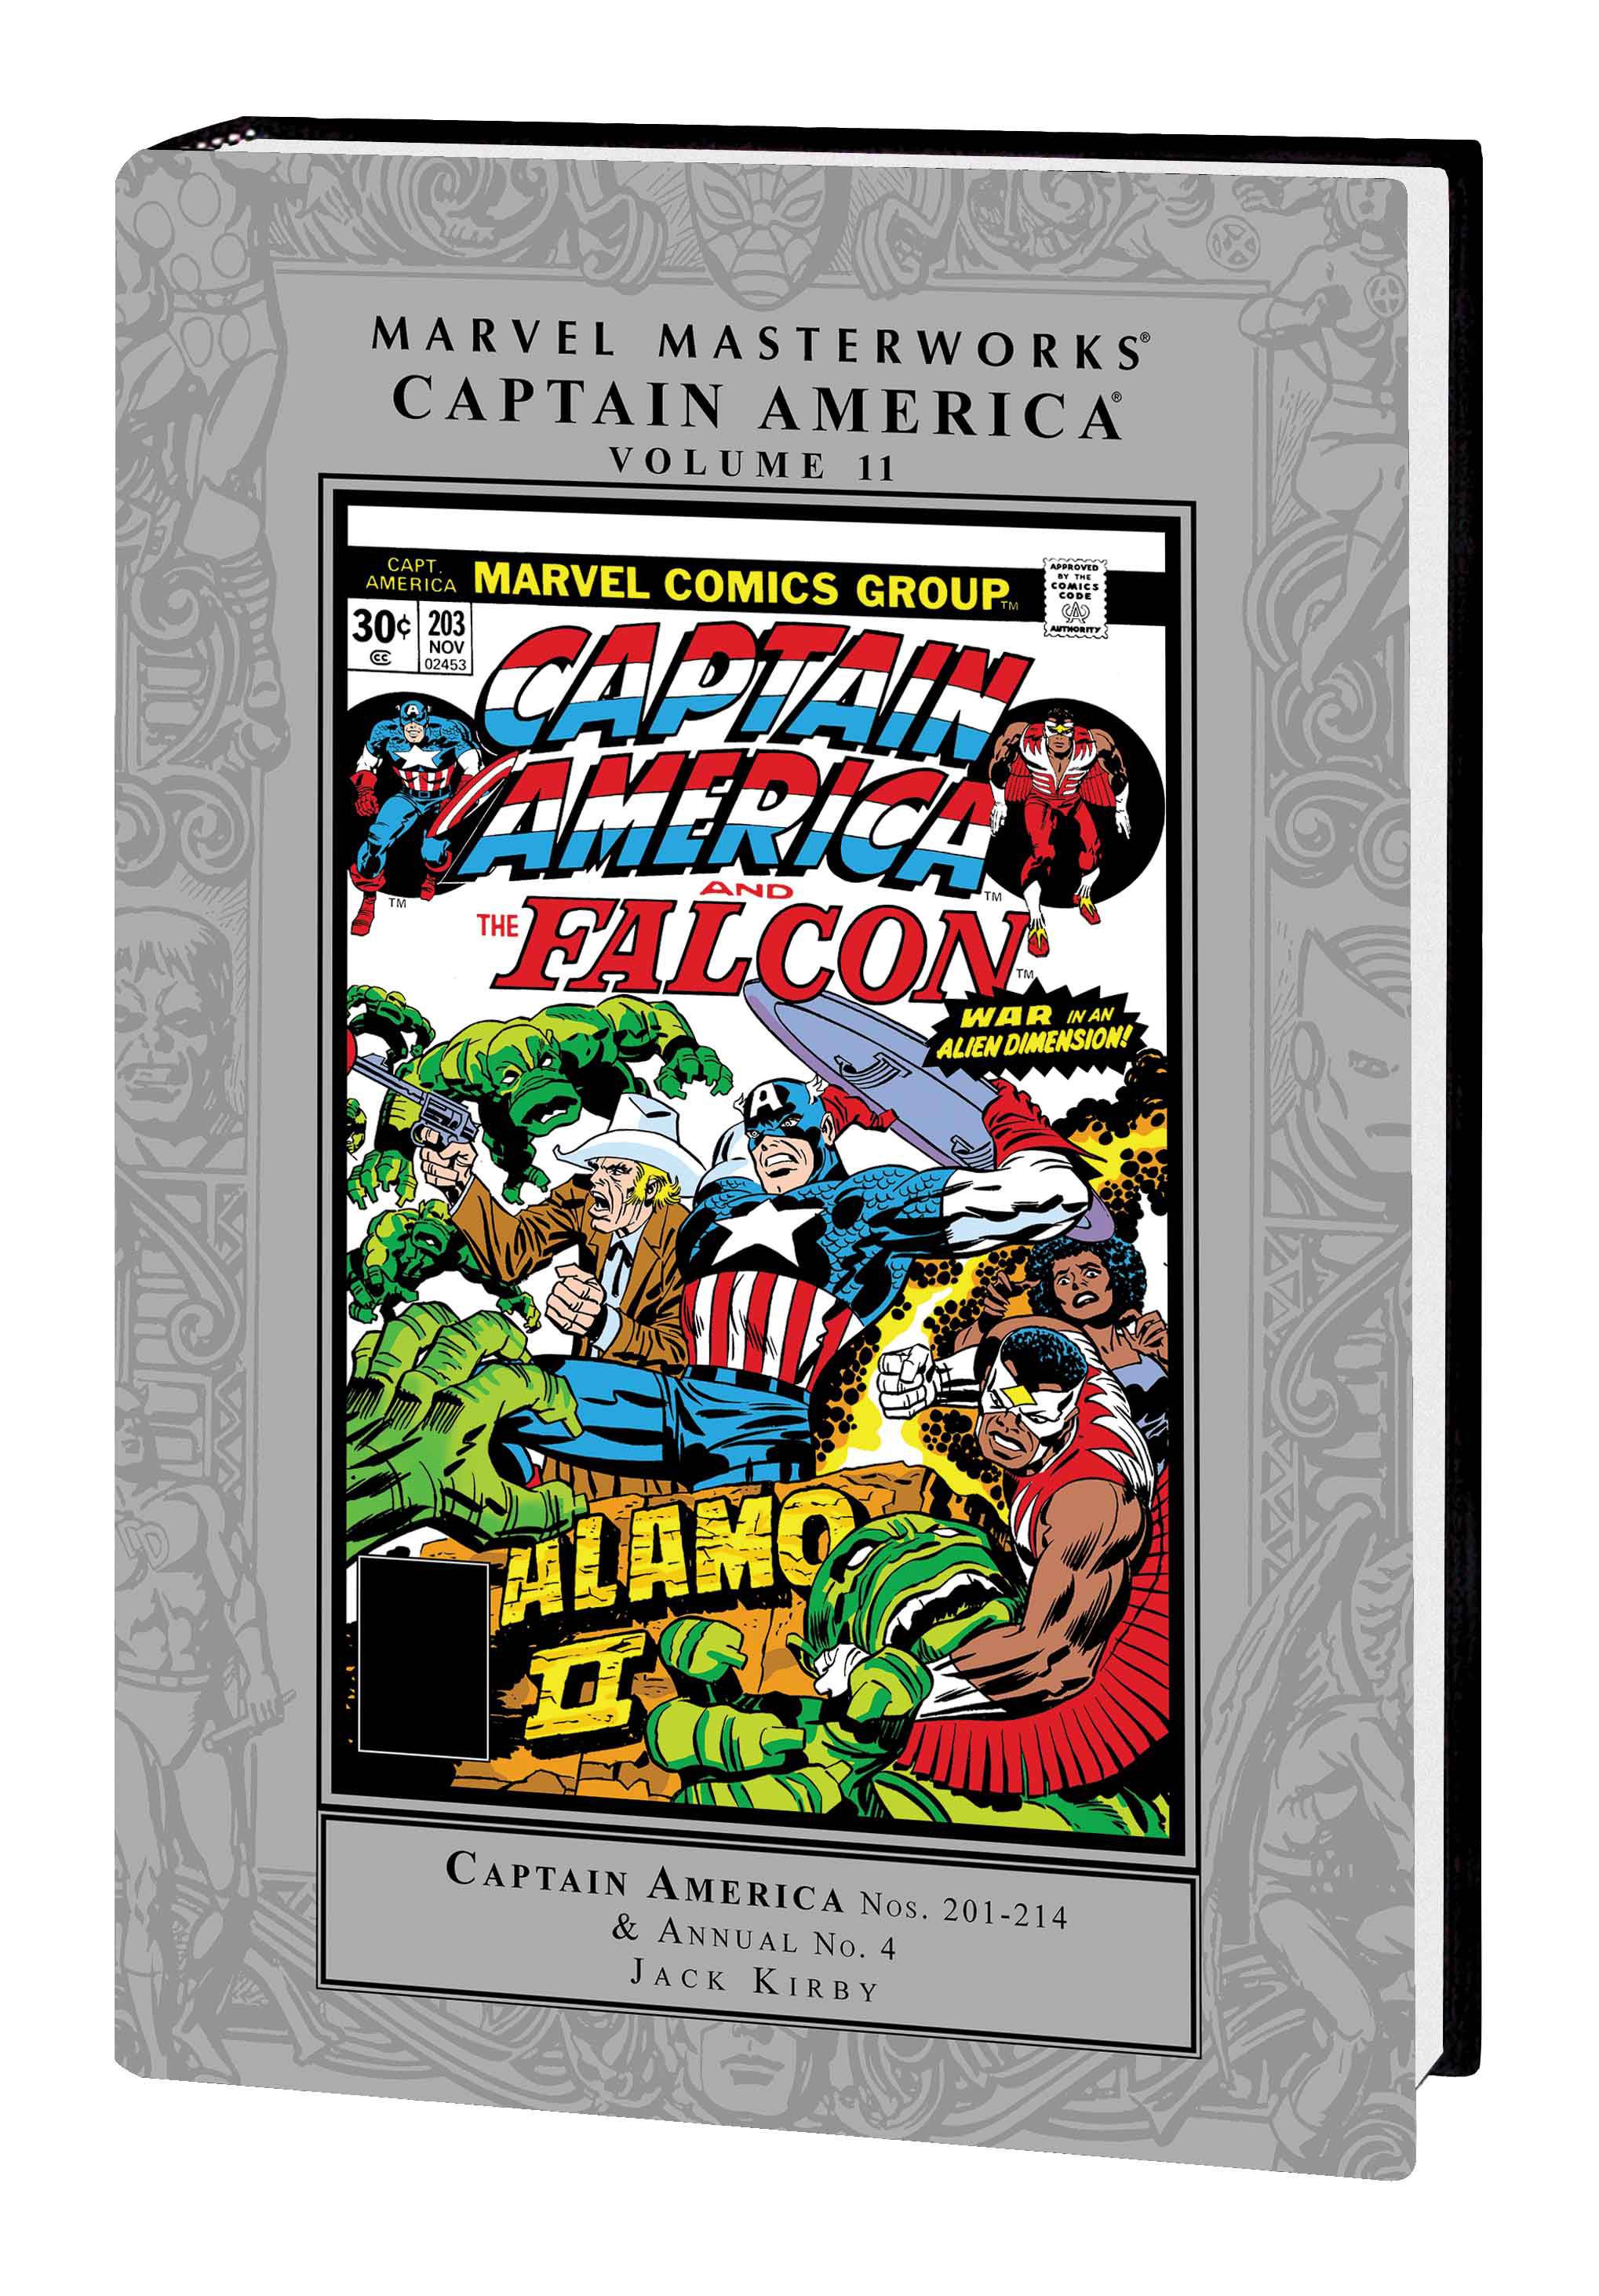 Marvel Masterworks Captain America Hardcover Volume 11